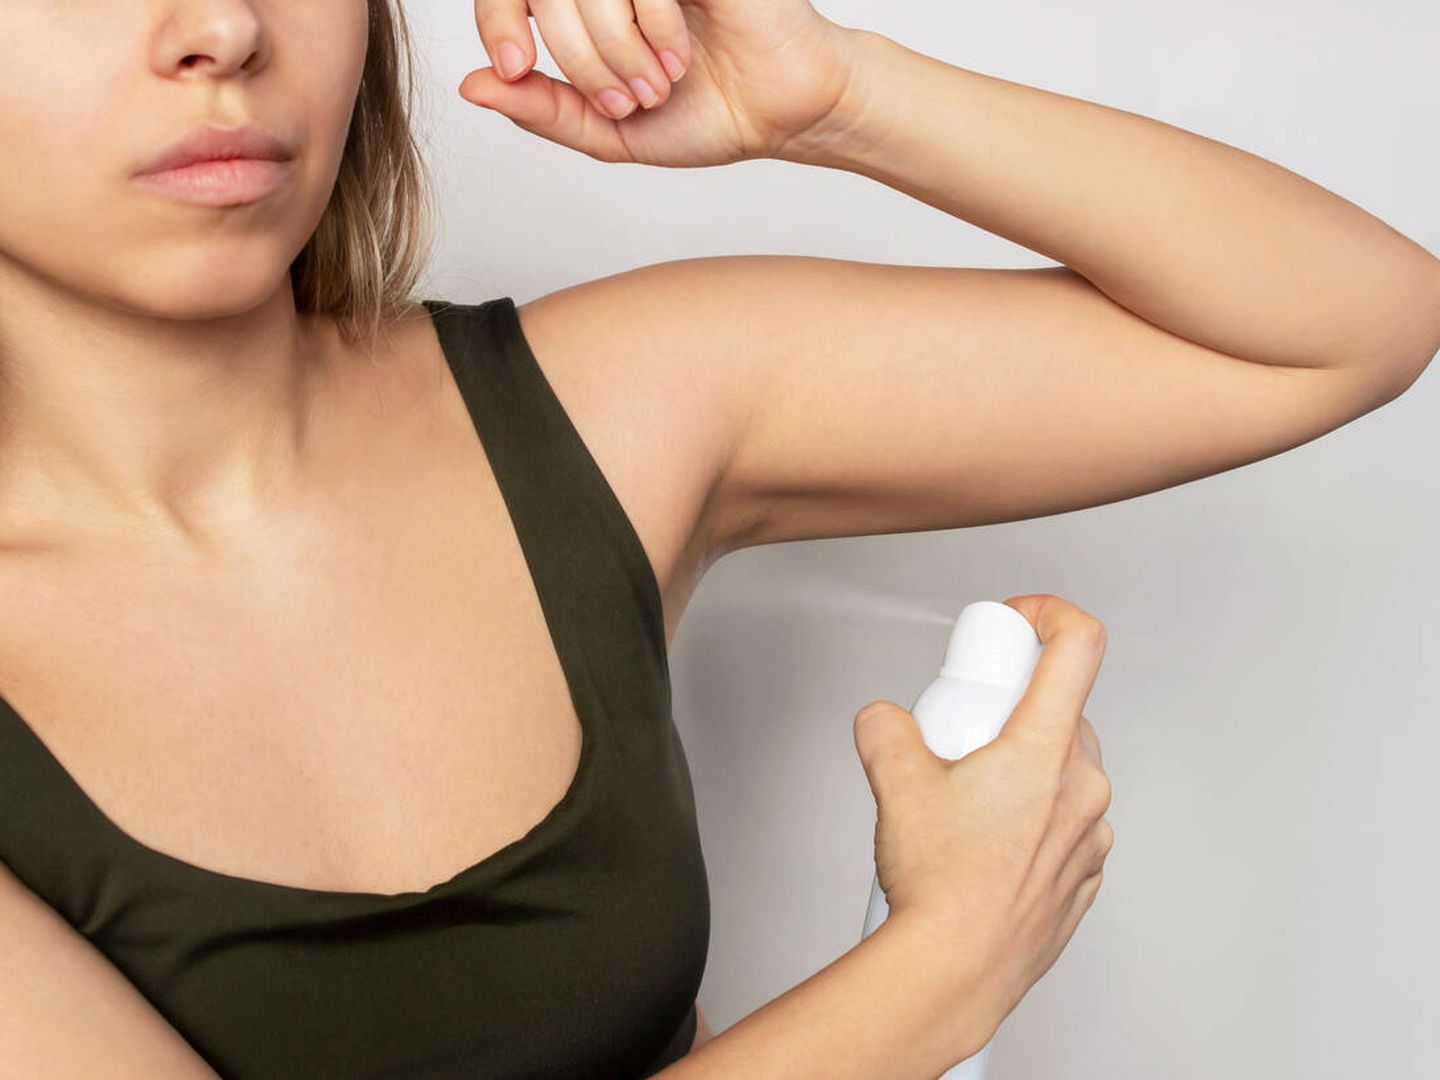 Los desodorantes son causa de dermatitis tanto en hombres como mujeres. (iStock)